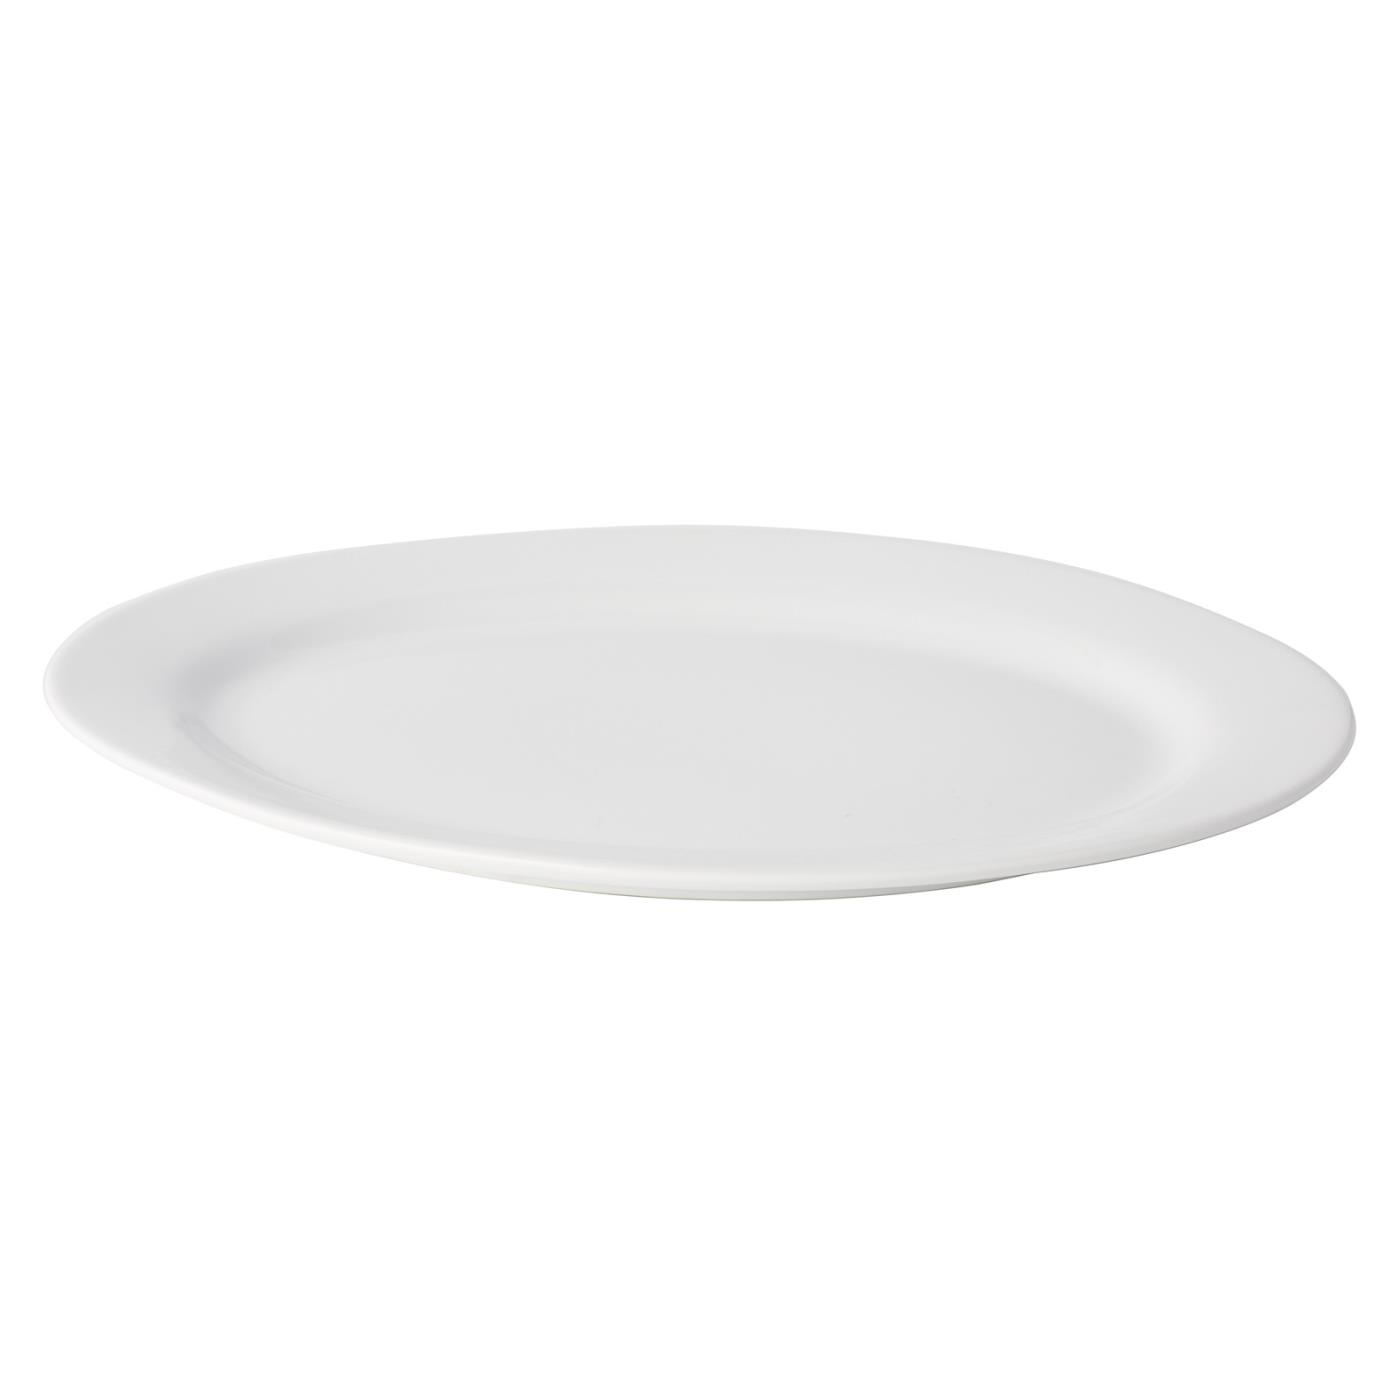 White Ceramic Oval Platter - 20"